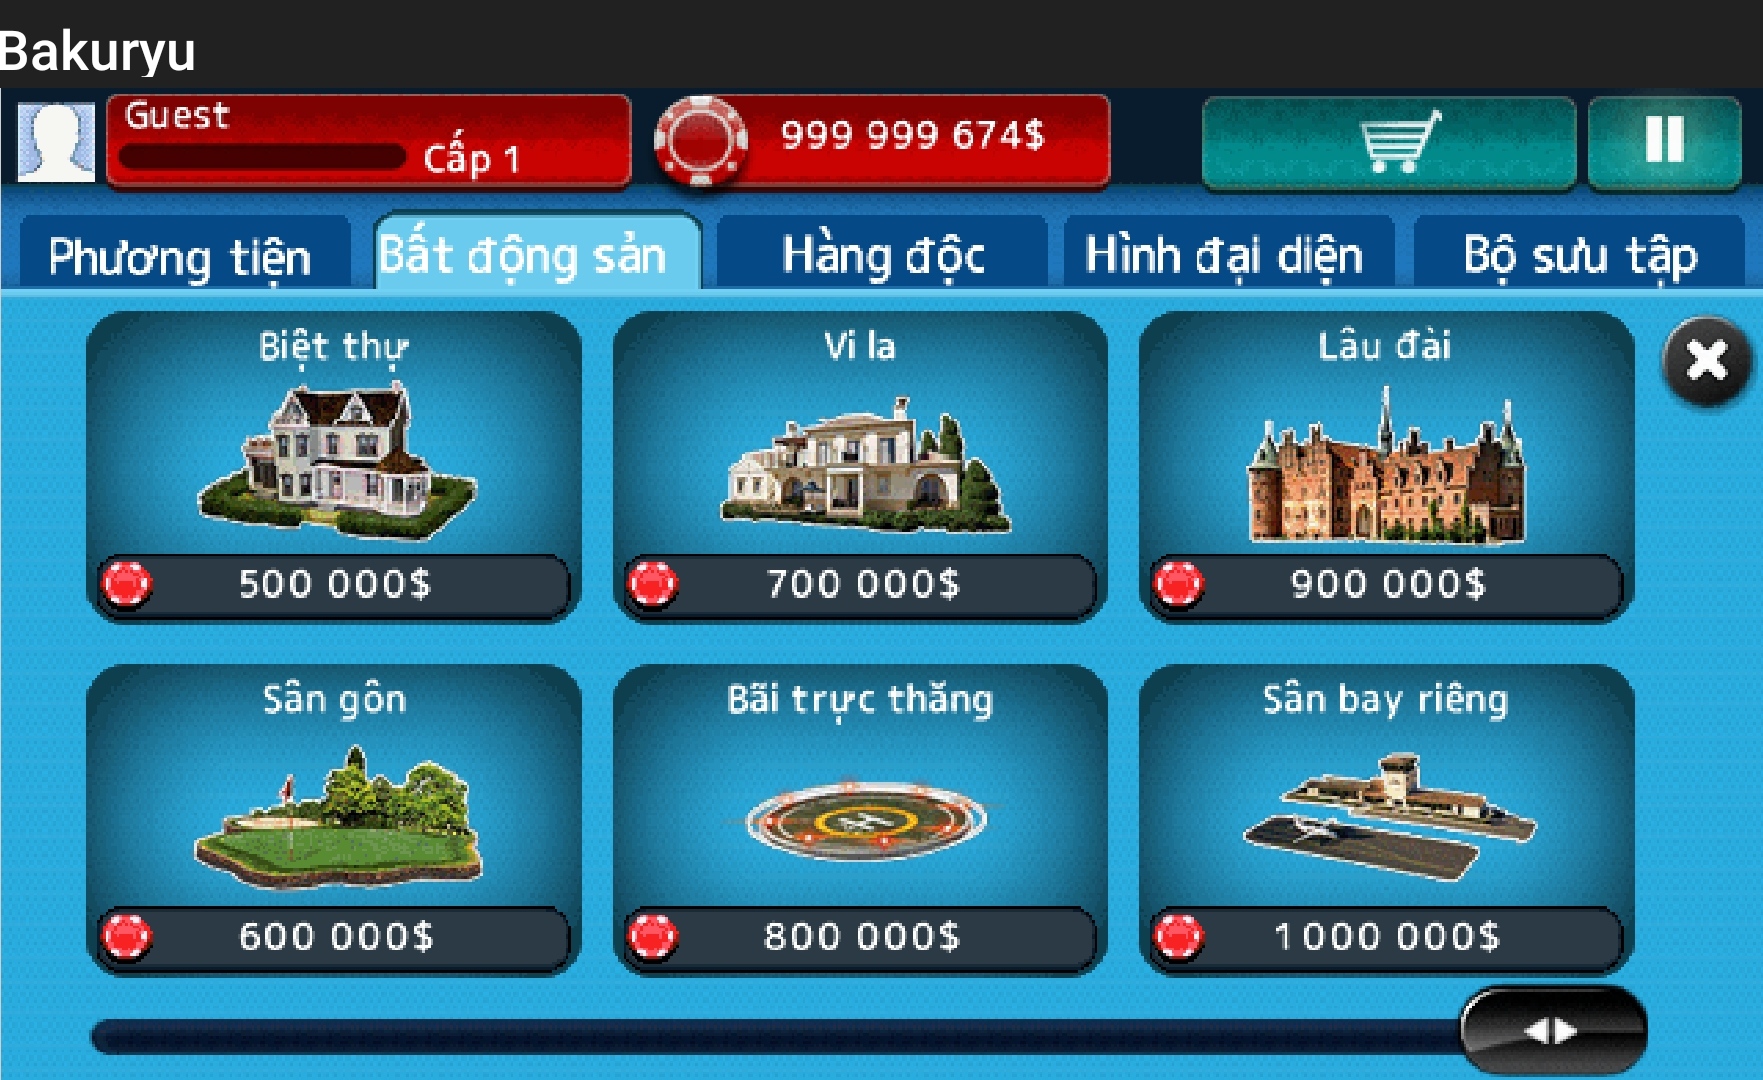 [SP Hack] Texas Hold'em Poker 3 Tiếng Việt Hack 999999999 Tiền By Bakuryu